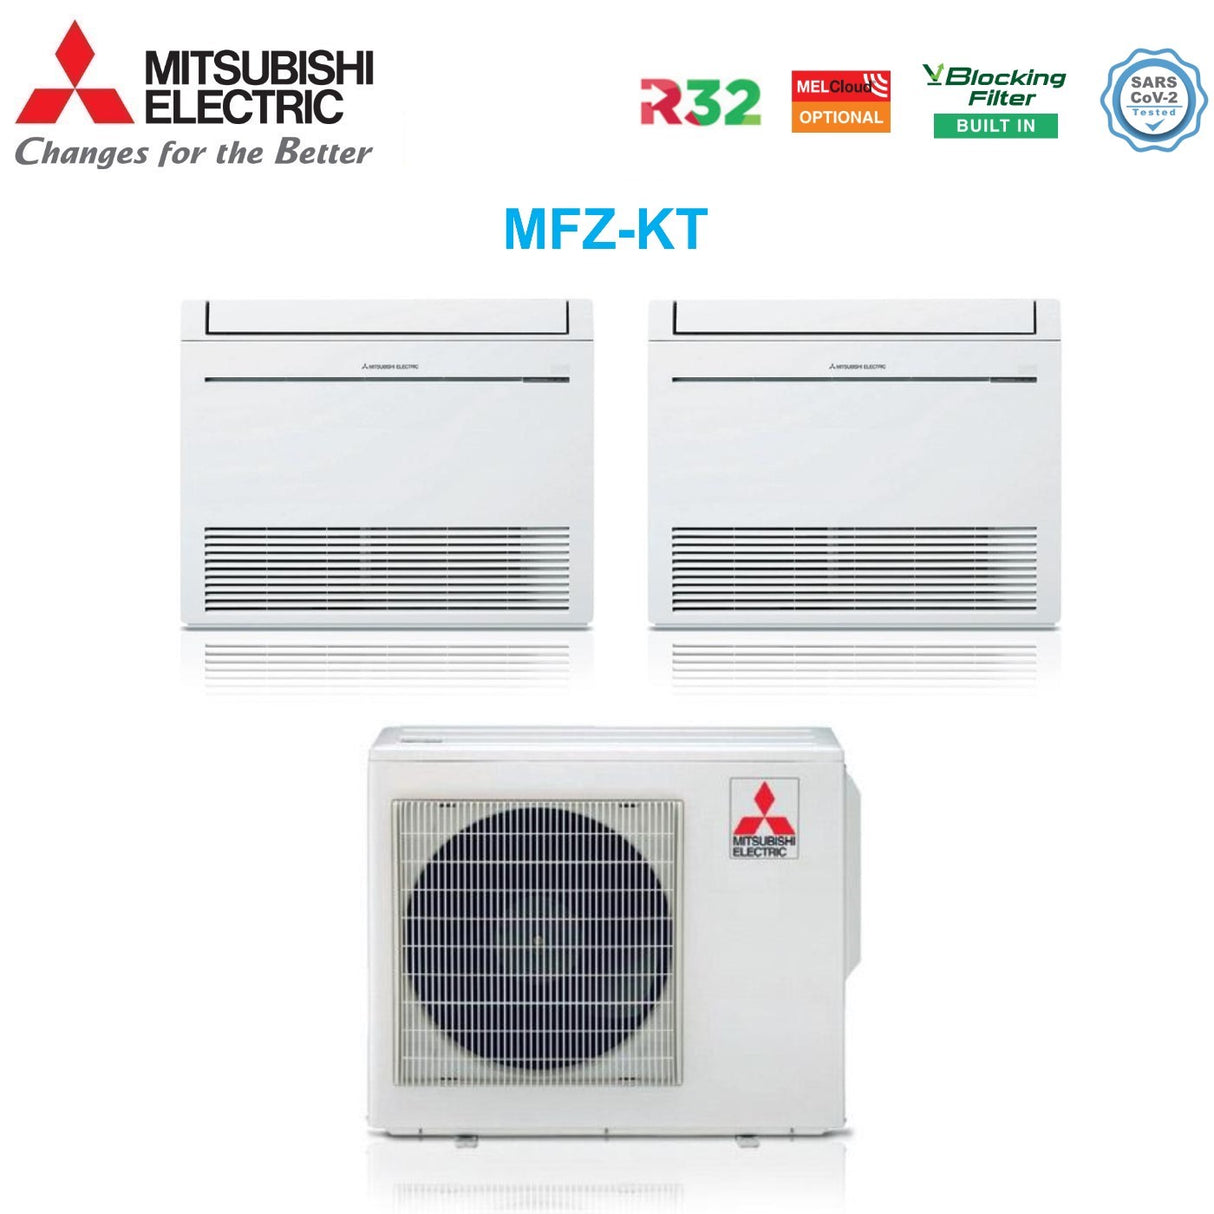 immagine-2-mitsubishi-electric-climatizzatore-condizionatore-mitsubishi-electric-pavimento-dual-split-inverter-serie-mfz-kt-912-con-mxz-3f54vf-r-32-wi-fi-optional-con-telecomando-incluso-900012000